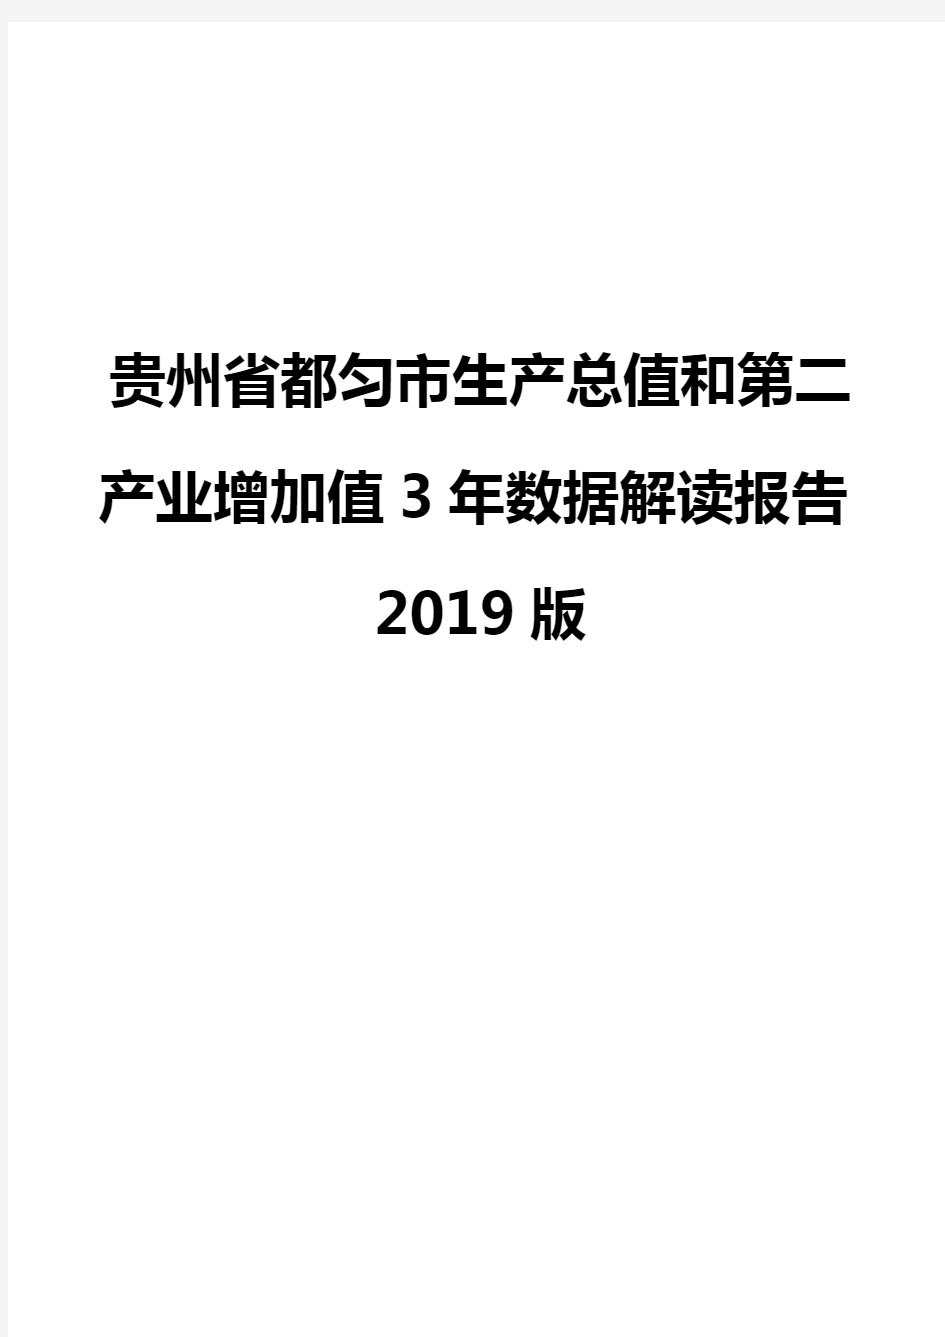 贵州省都匀市生产总值和第二产业增加值3年数据解读报告2019版